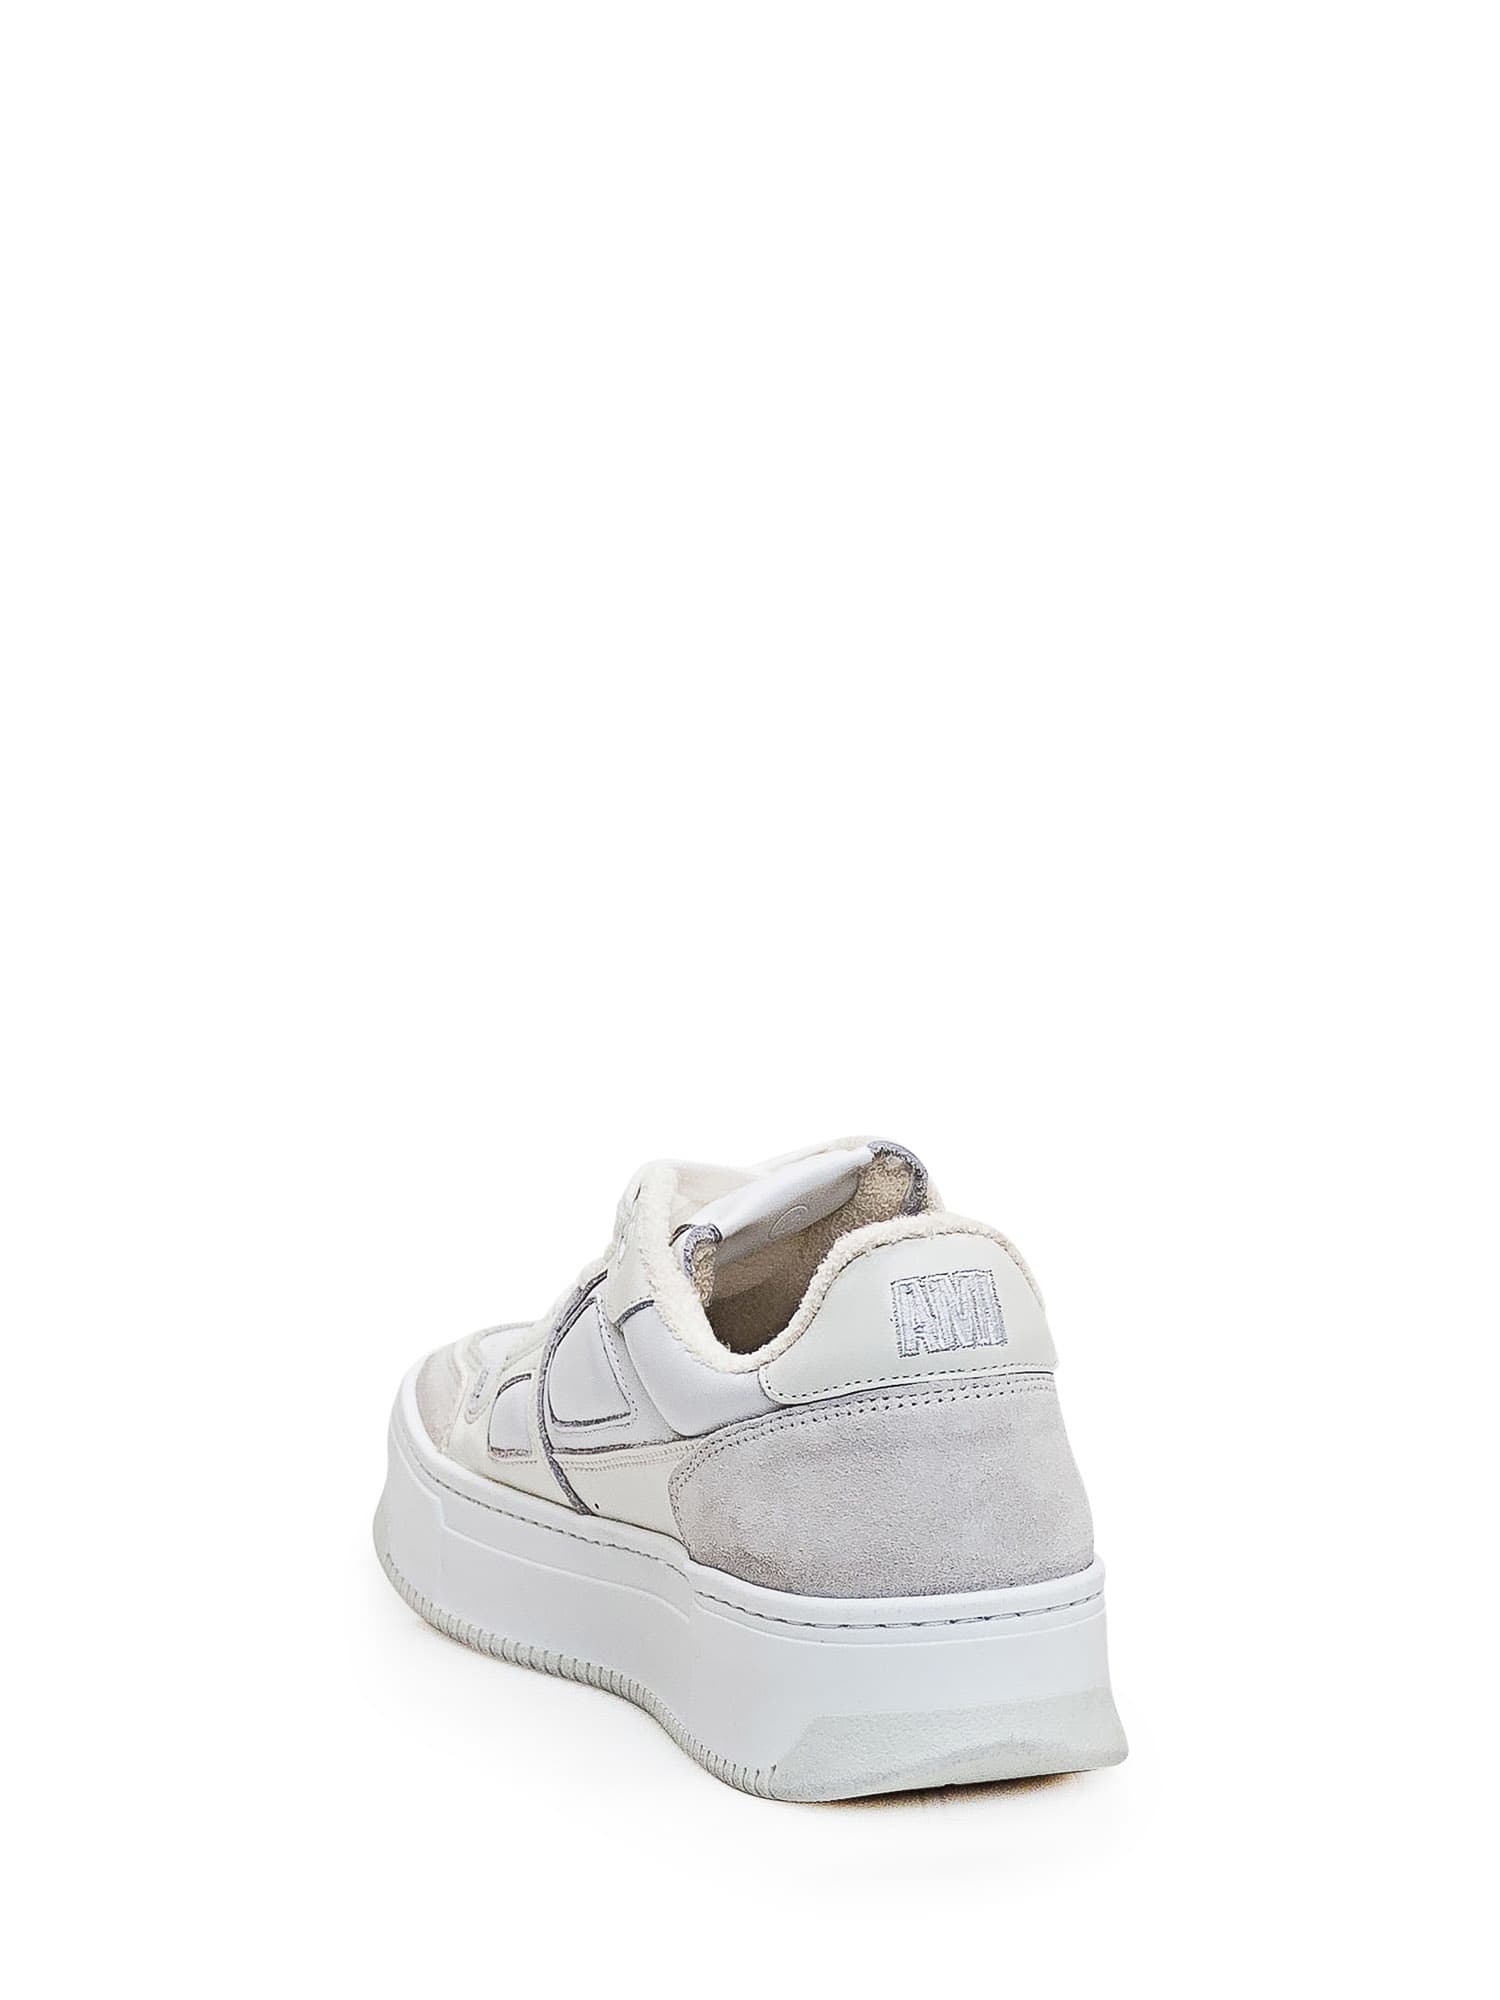 Shop Ami Alexandre Mattiussi New Arcade Sneaker In White/off White